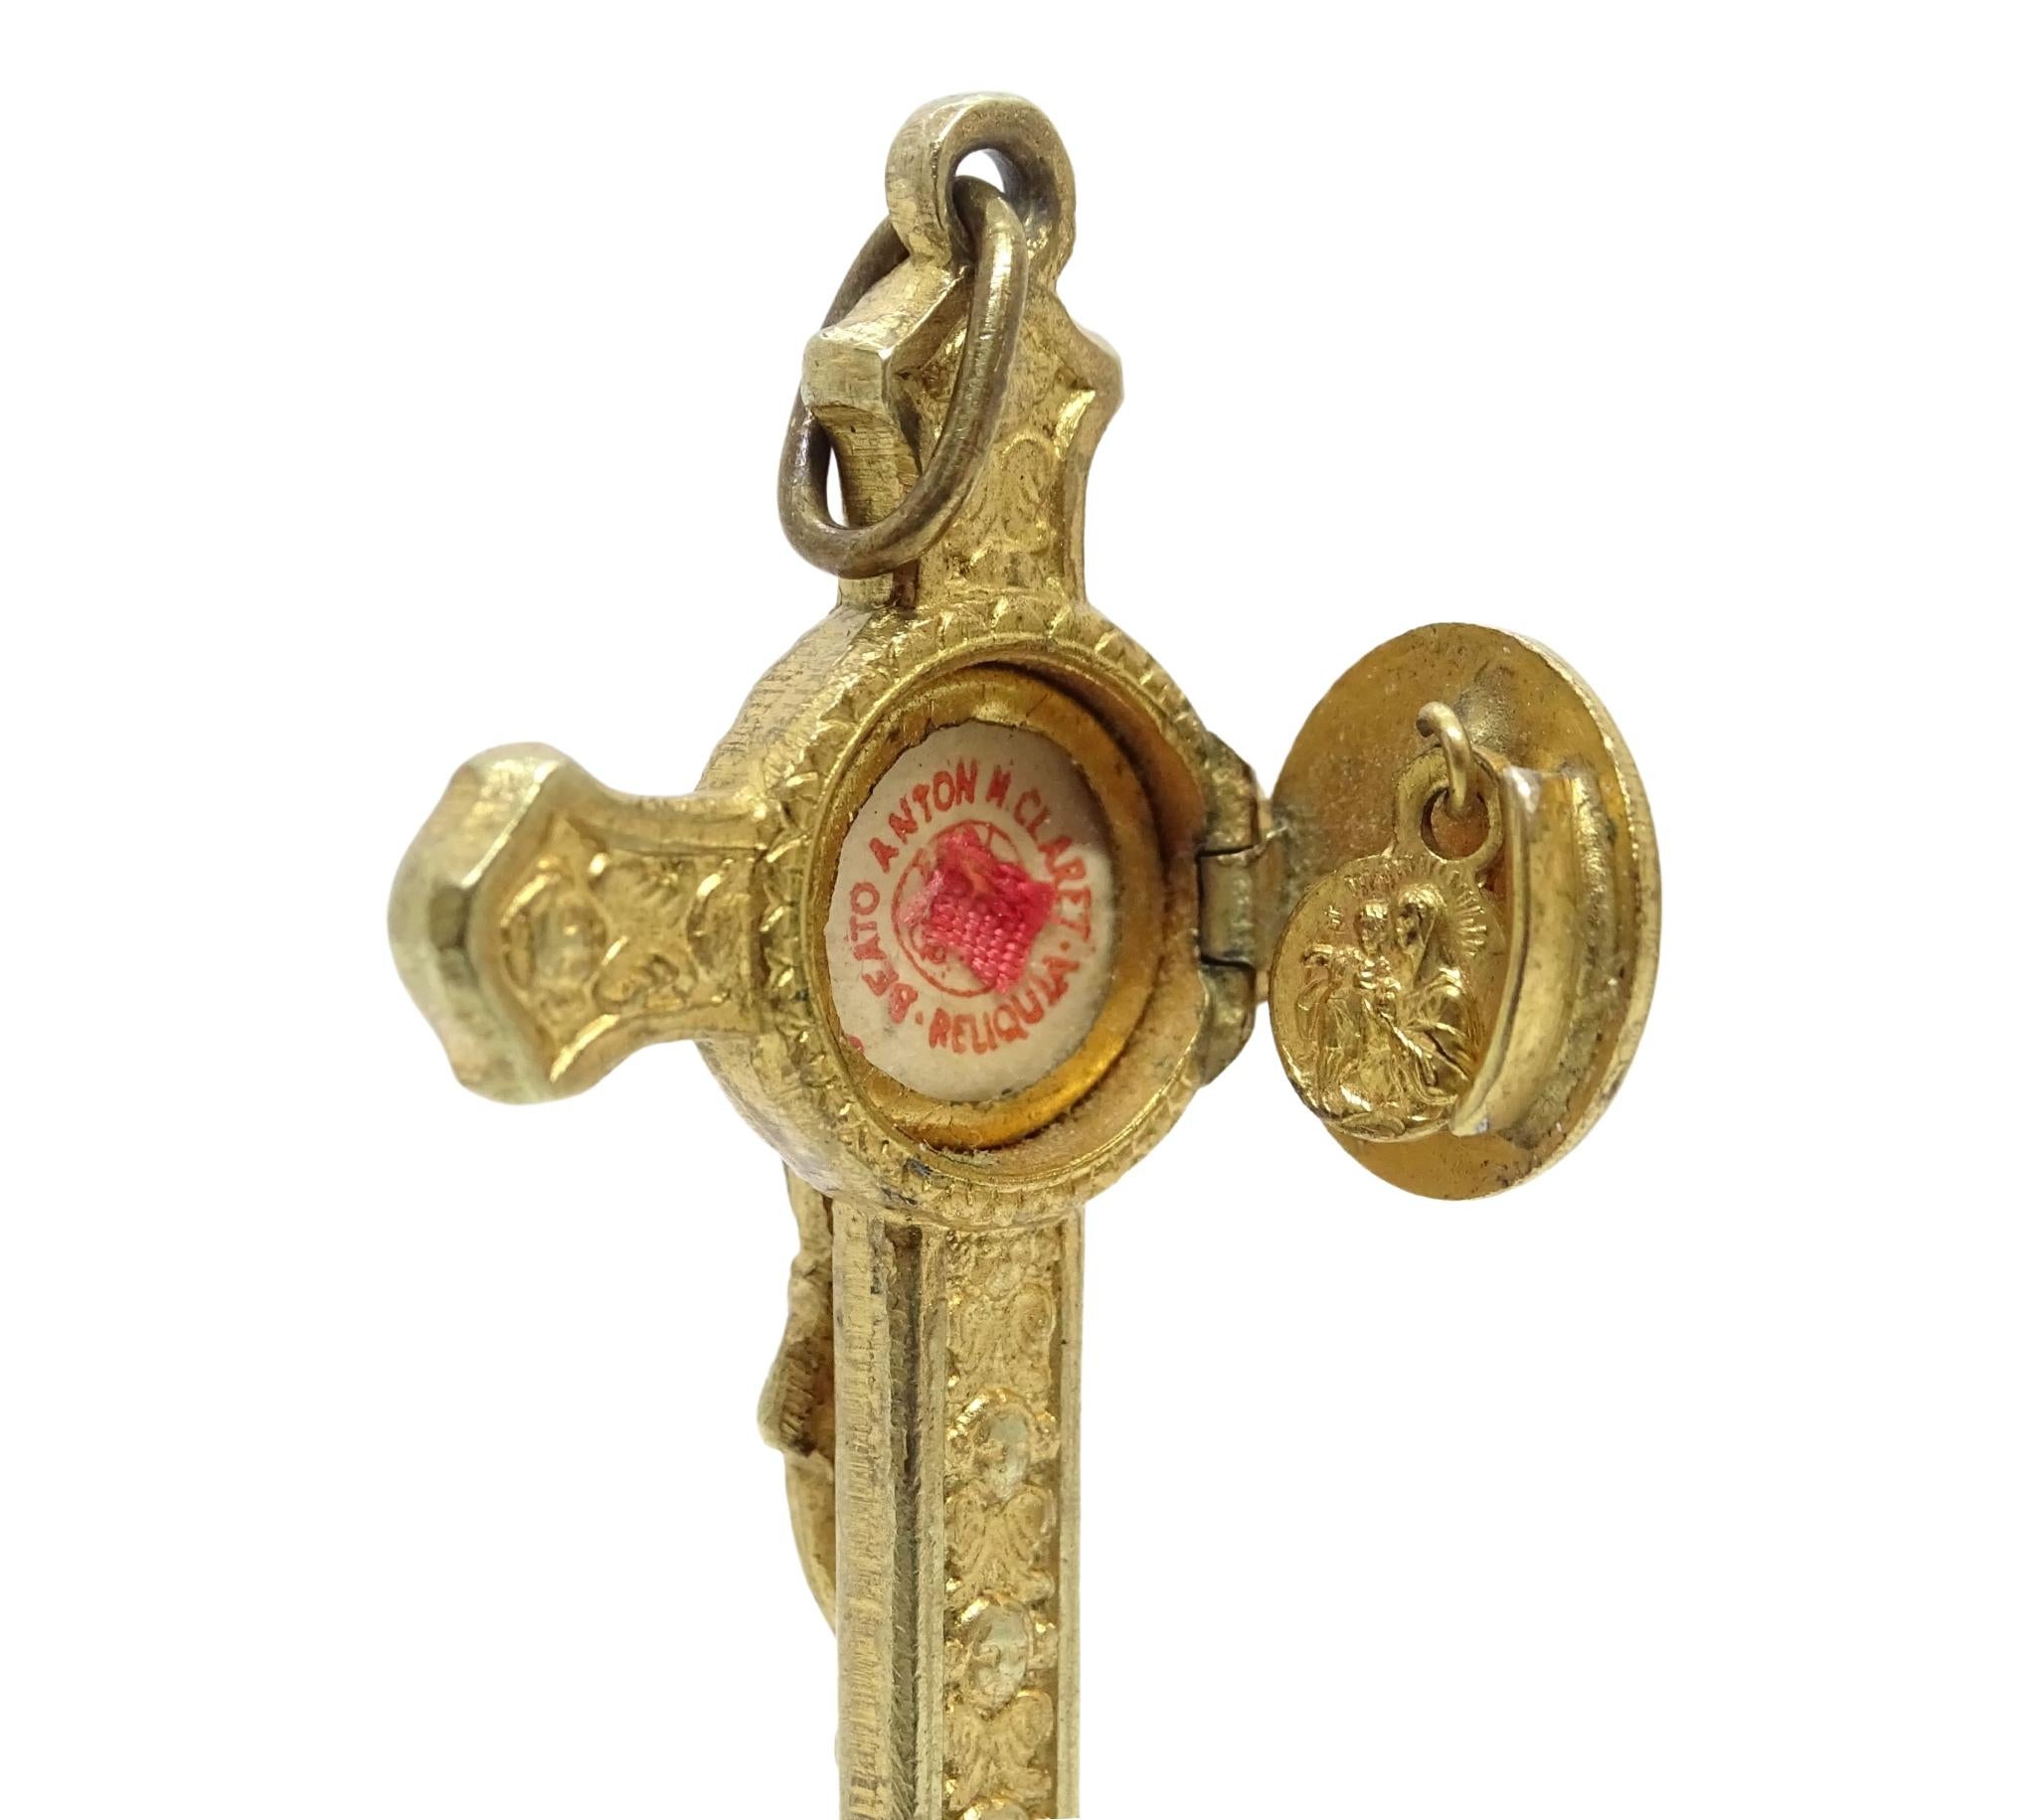 Dieser goldene Reliquienanhänger in Form eines Kruzifixes ist dem katalanischen Heiligen Antonio María Claret gewidmet. Dieses lateinische Kreuz mit runden Endstücken zeigt einen gekreuzigten Christus in Relief. Die Arme des Kreuzes sind sowohl auf